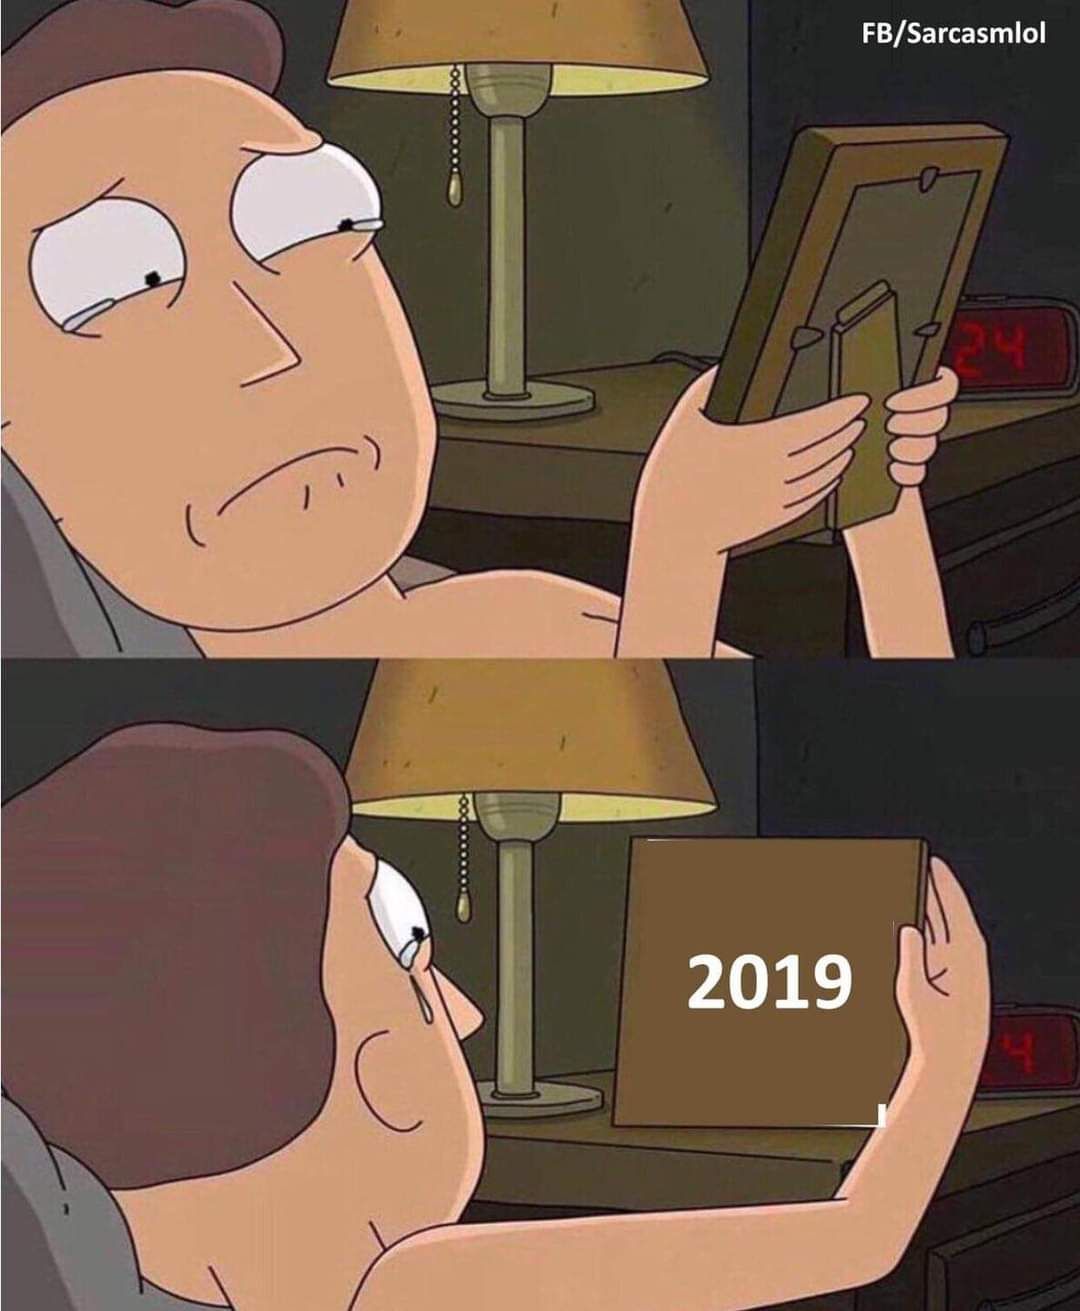 2019 ...